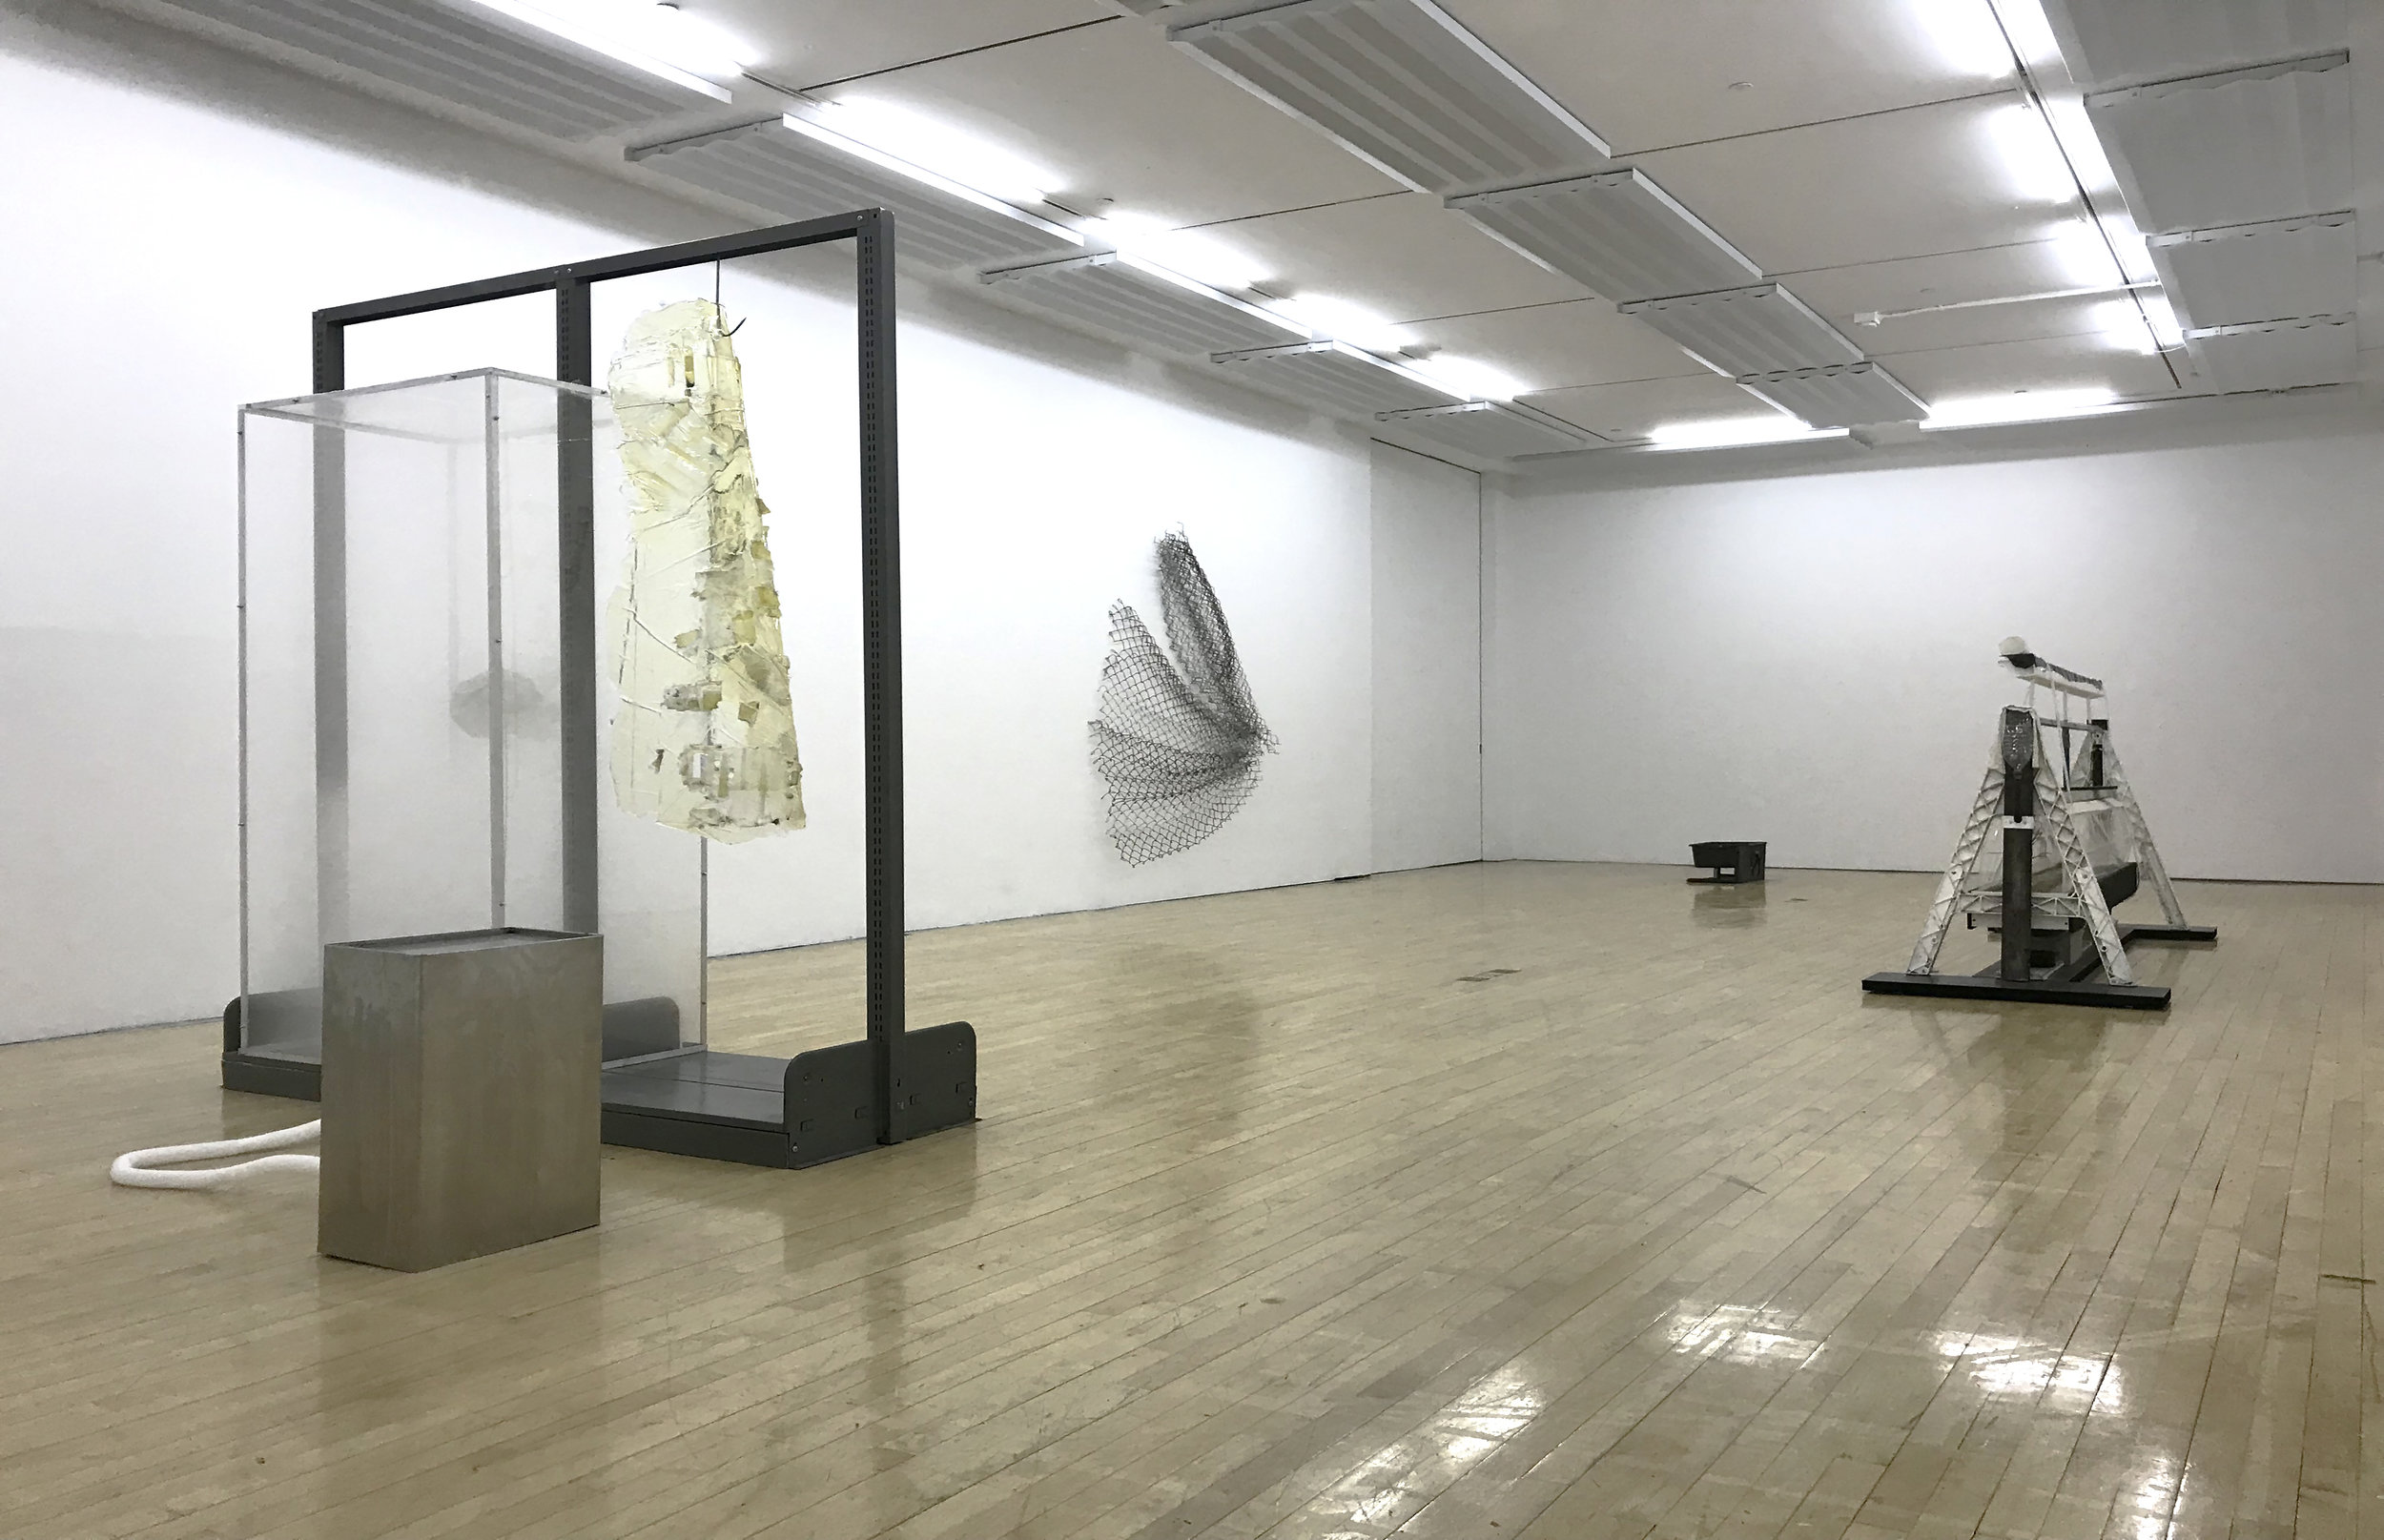   Donovan, Markov, Mildenberg  installation view 